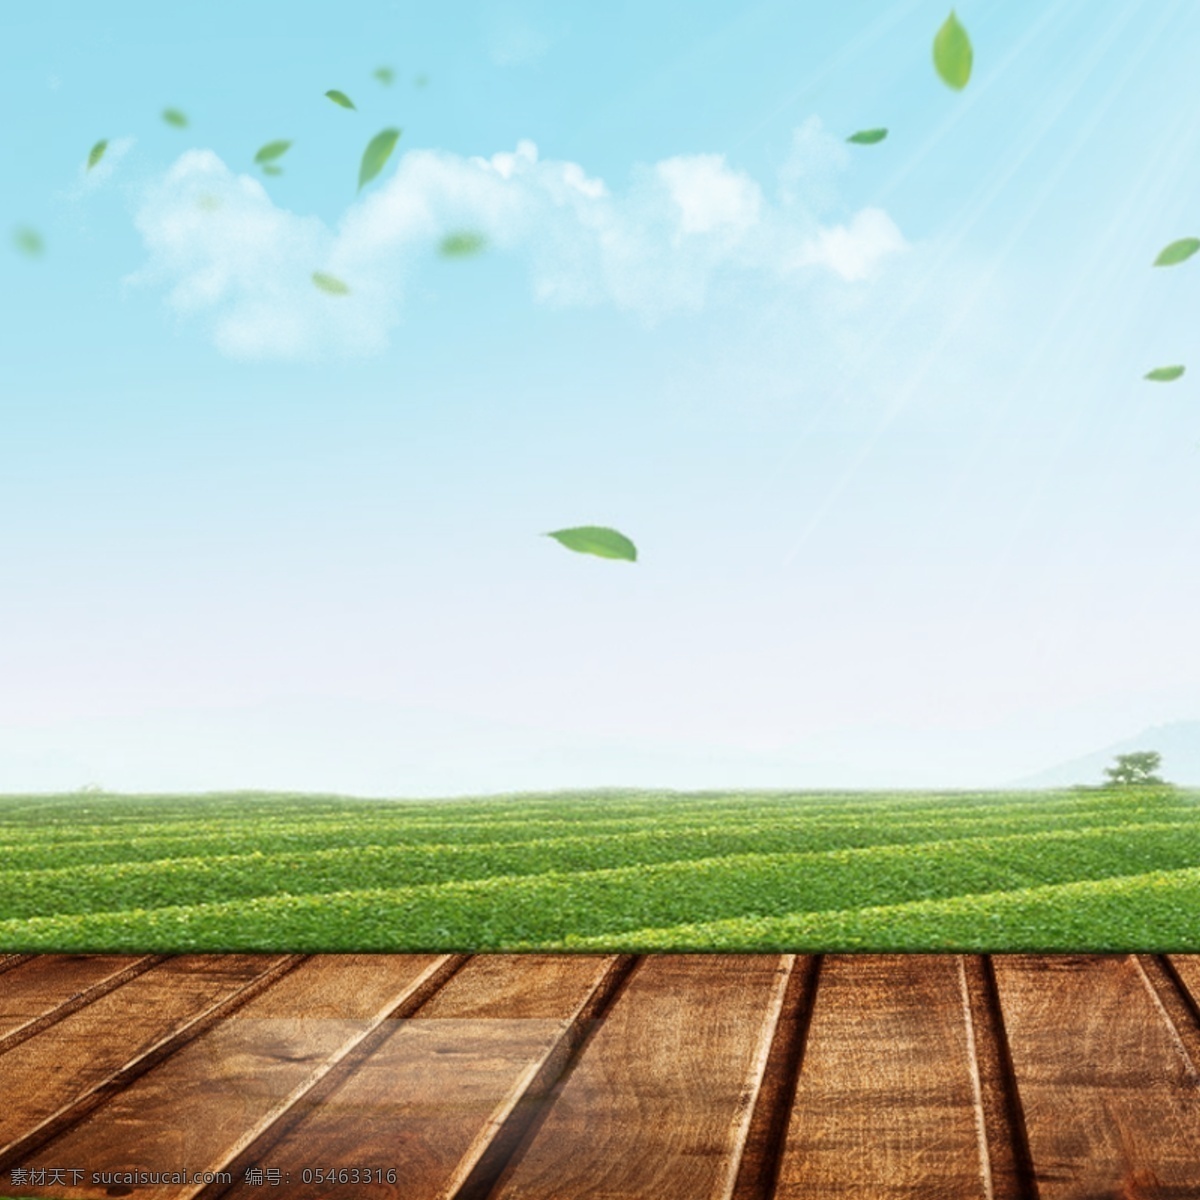 绿色 模板 展示 主 图 阳光 木台 蓝天 麦穗 绿叶 天空 木纹 台子